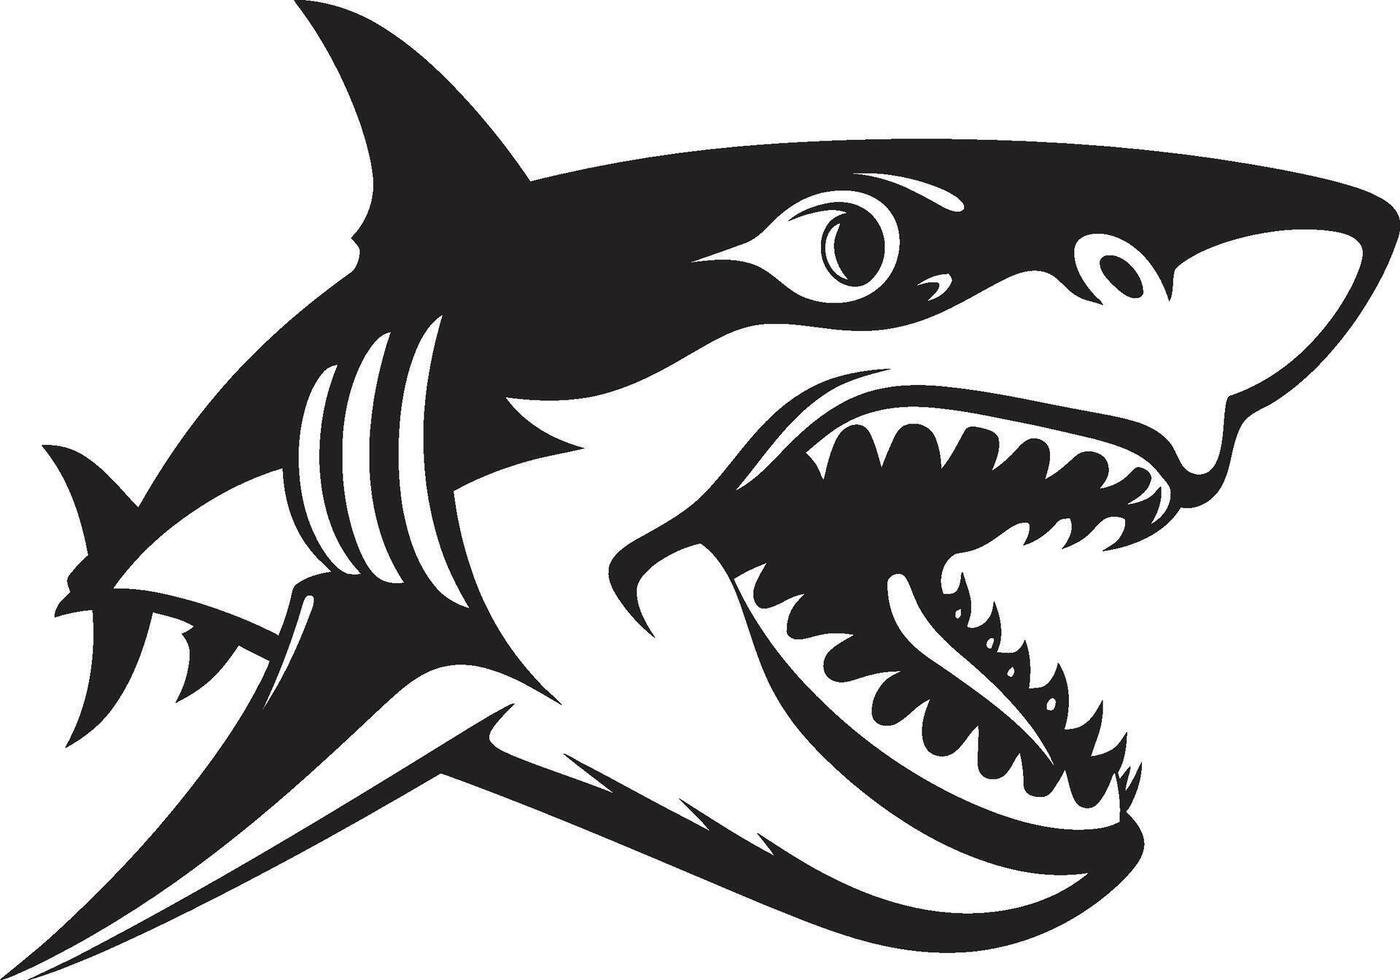 Swift Sea Sovereign Black for Sleek Shark Dynamic Depths Elegant for Fearsome Shark vector